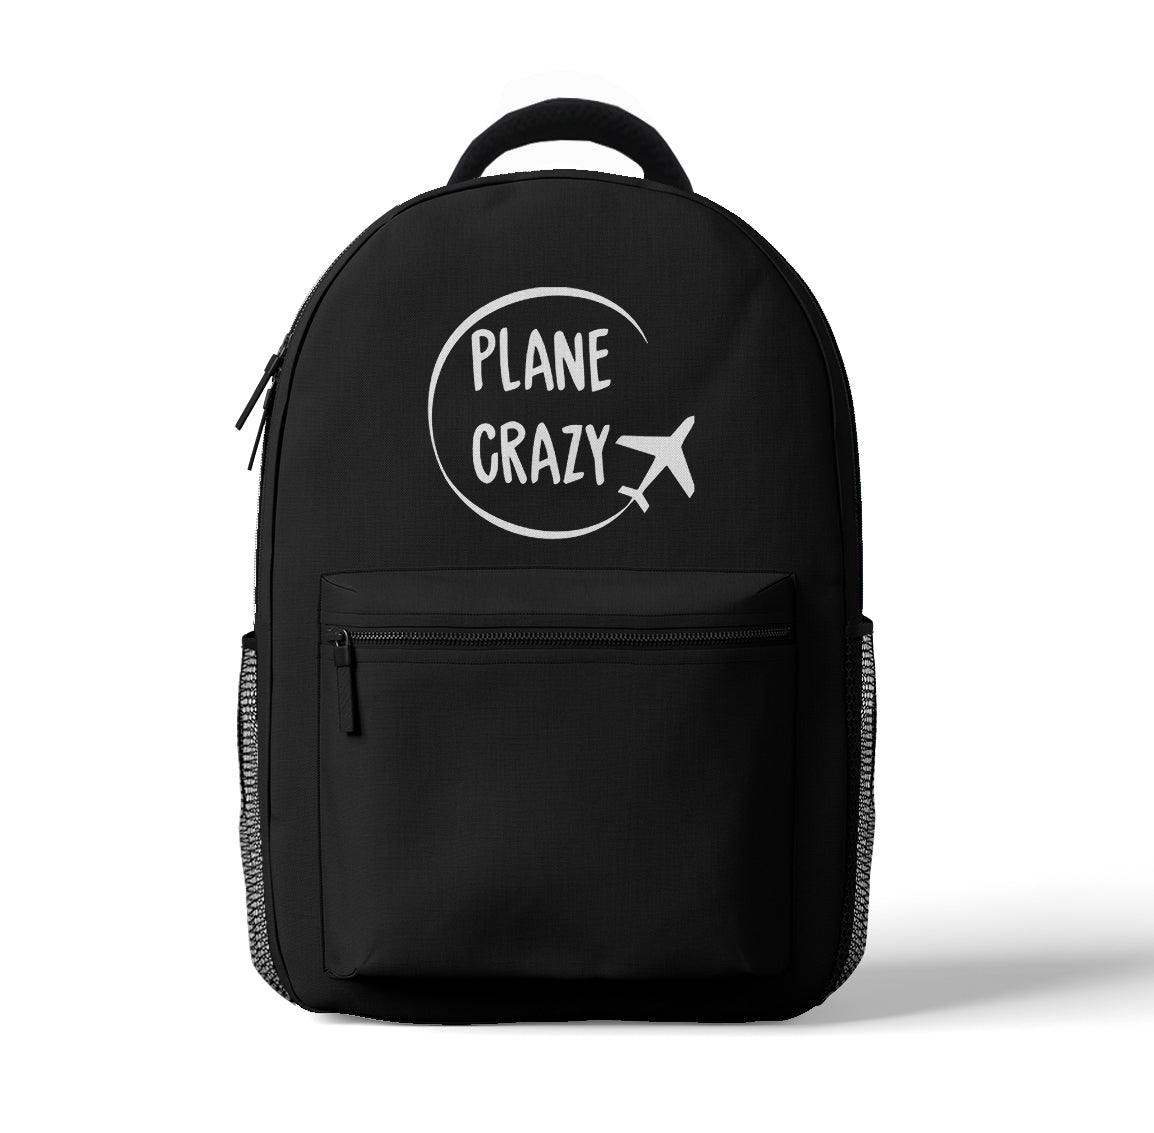 Plane Crazy Designed 3D Backpacks